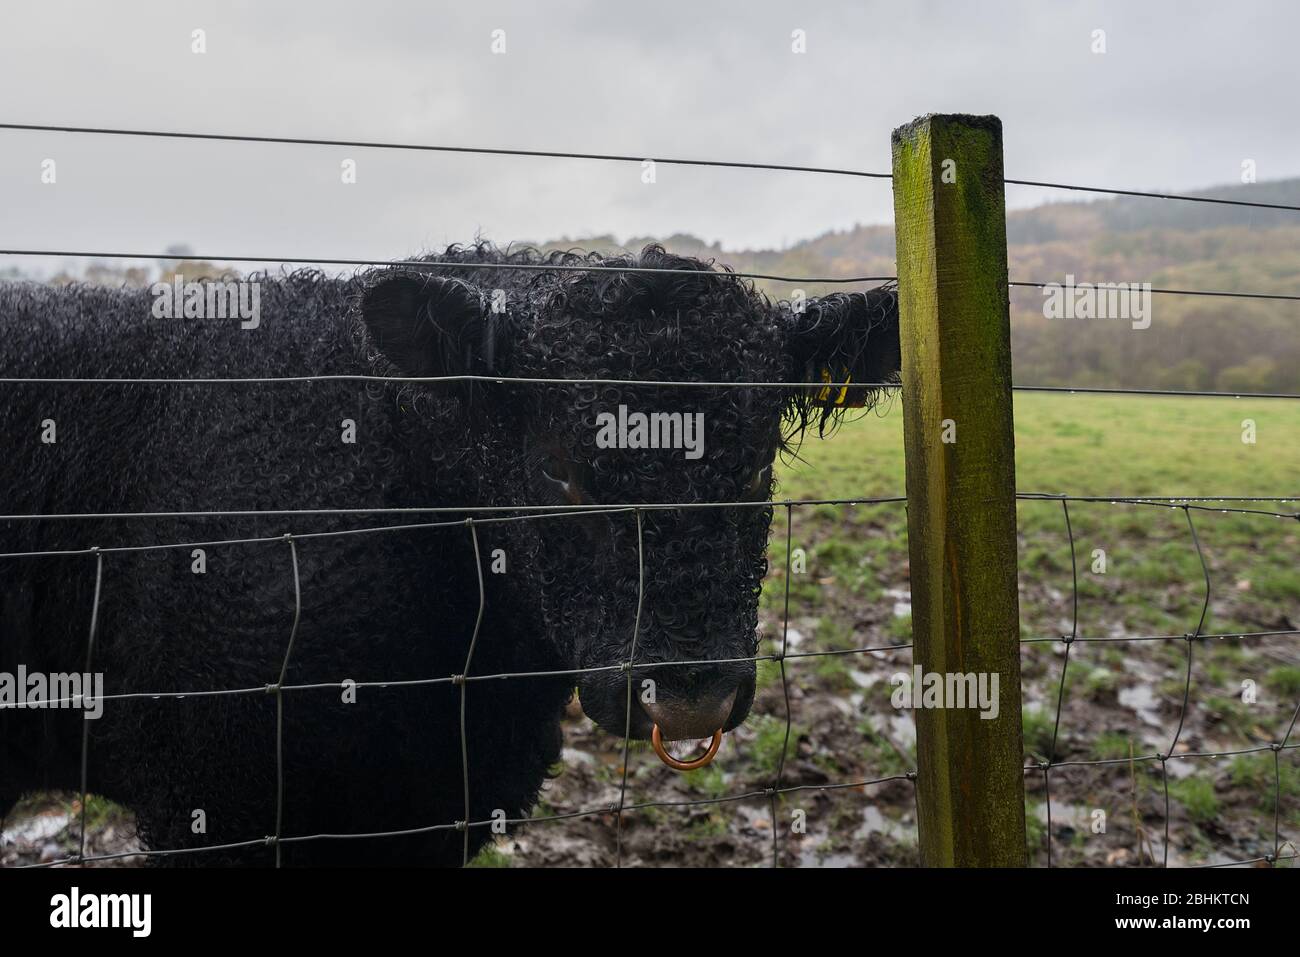 Un joven ganado de las tierras altas con pelo rizado negro con anillo de latón se encuentra en un campo fangoso, el lado seguro de una valla. Foto de stock